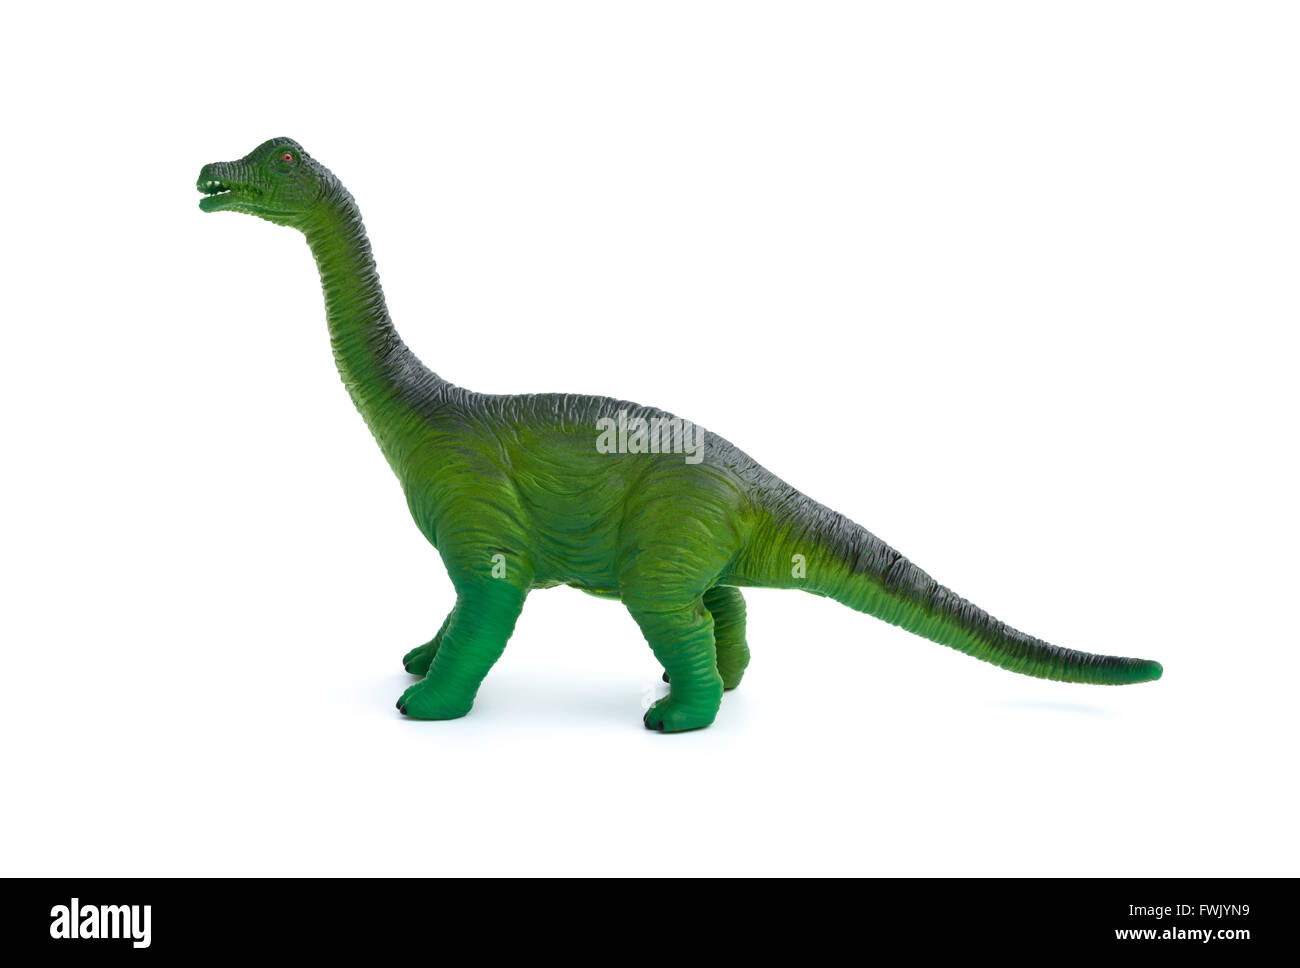 Seite Ansicht grün Brachiosaurus Spielzeug auf weißem Hintergrund  Stockfotografie - Alamy